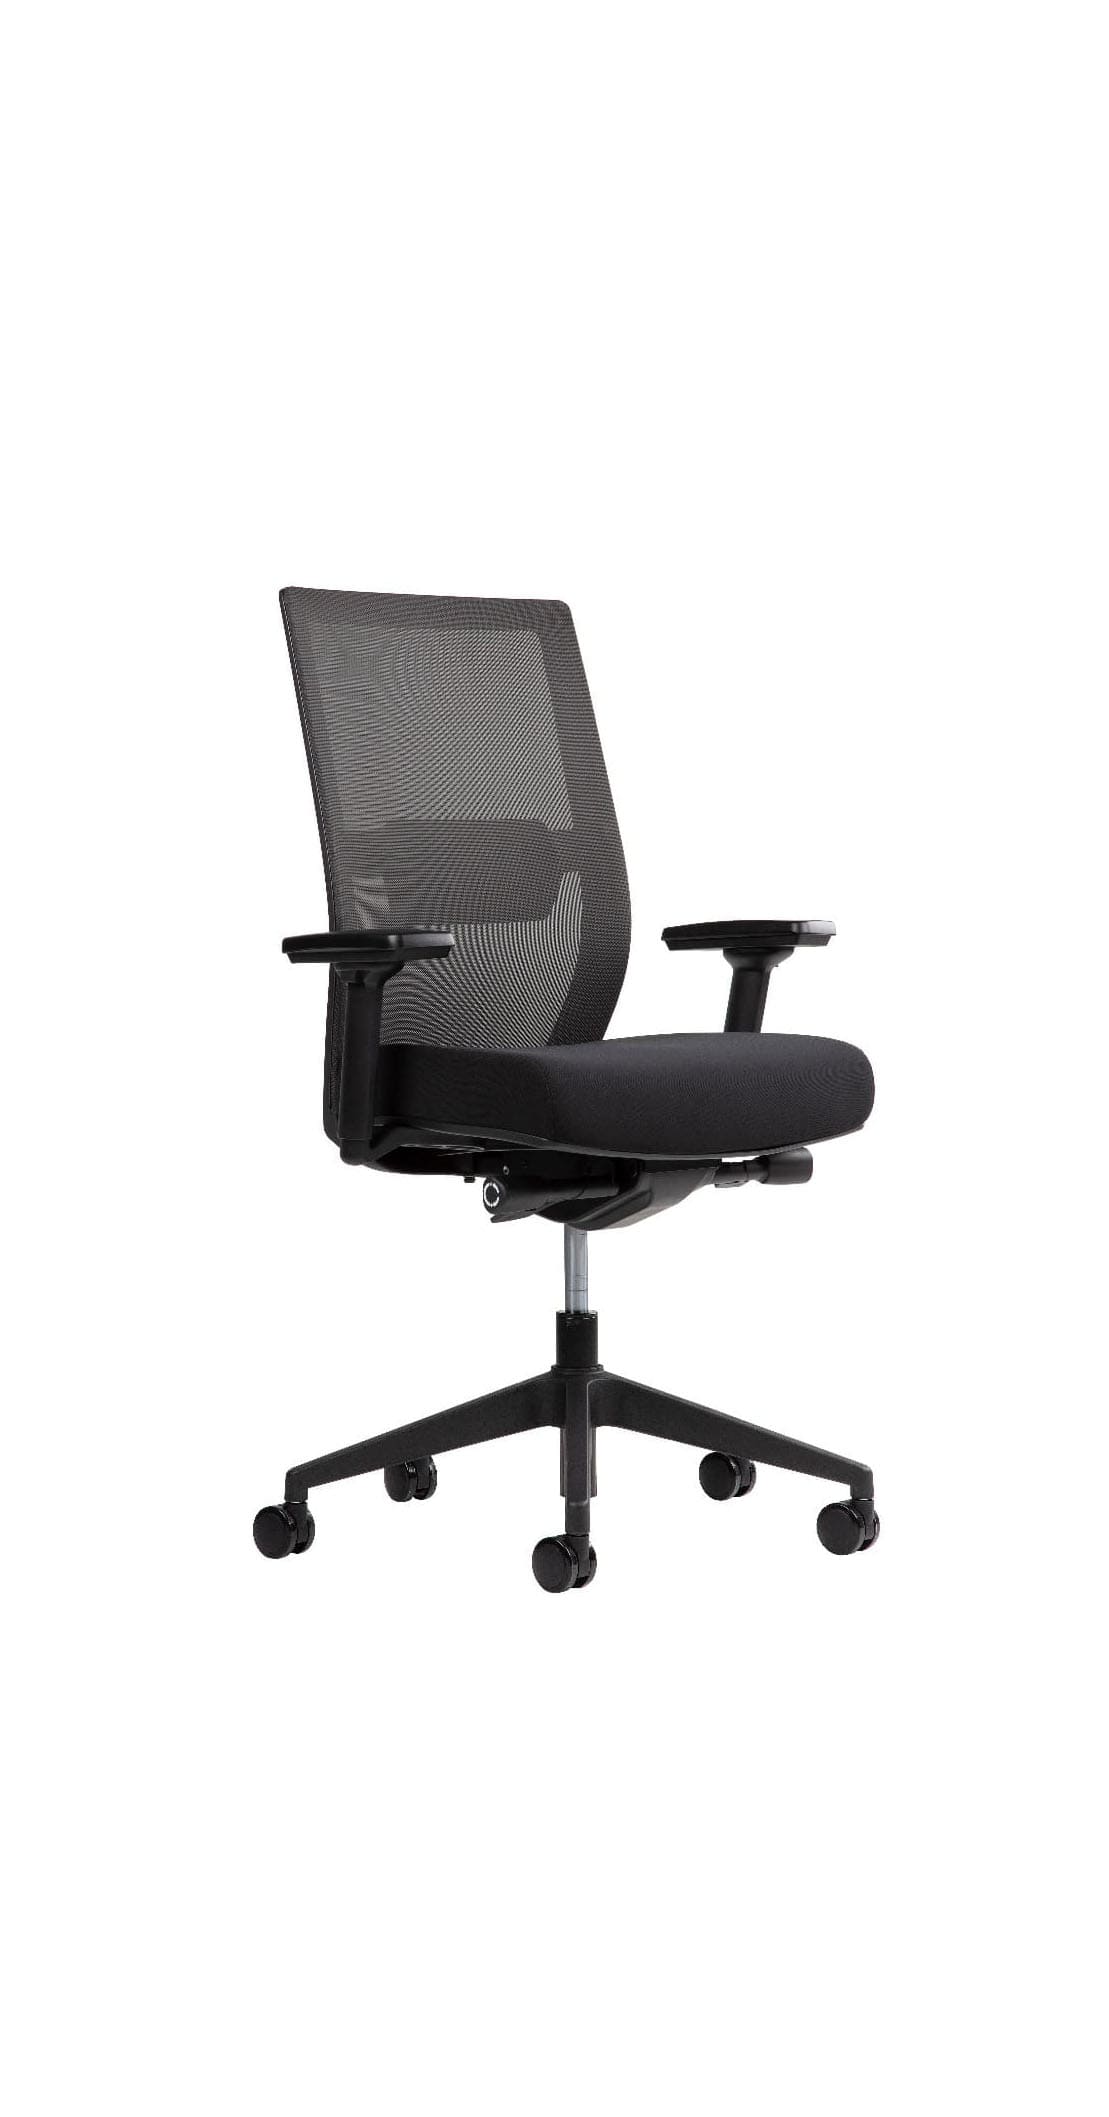 Chaises, sièges, fauteuils et tabourets de bureau design et confortables